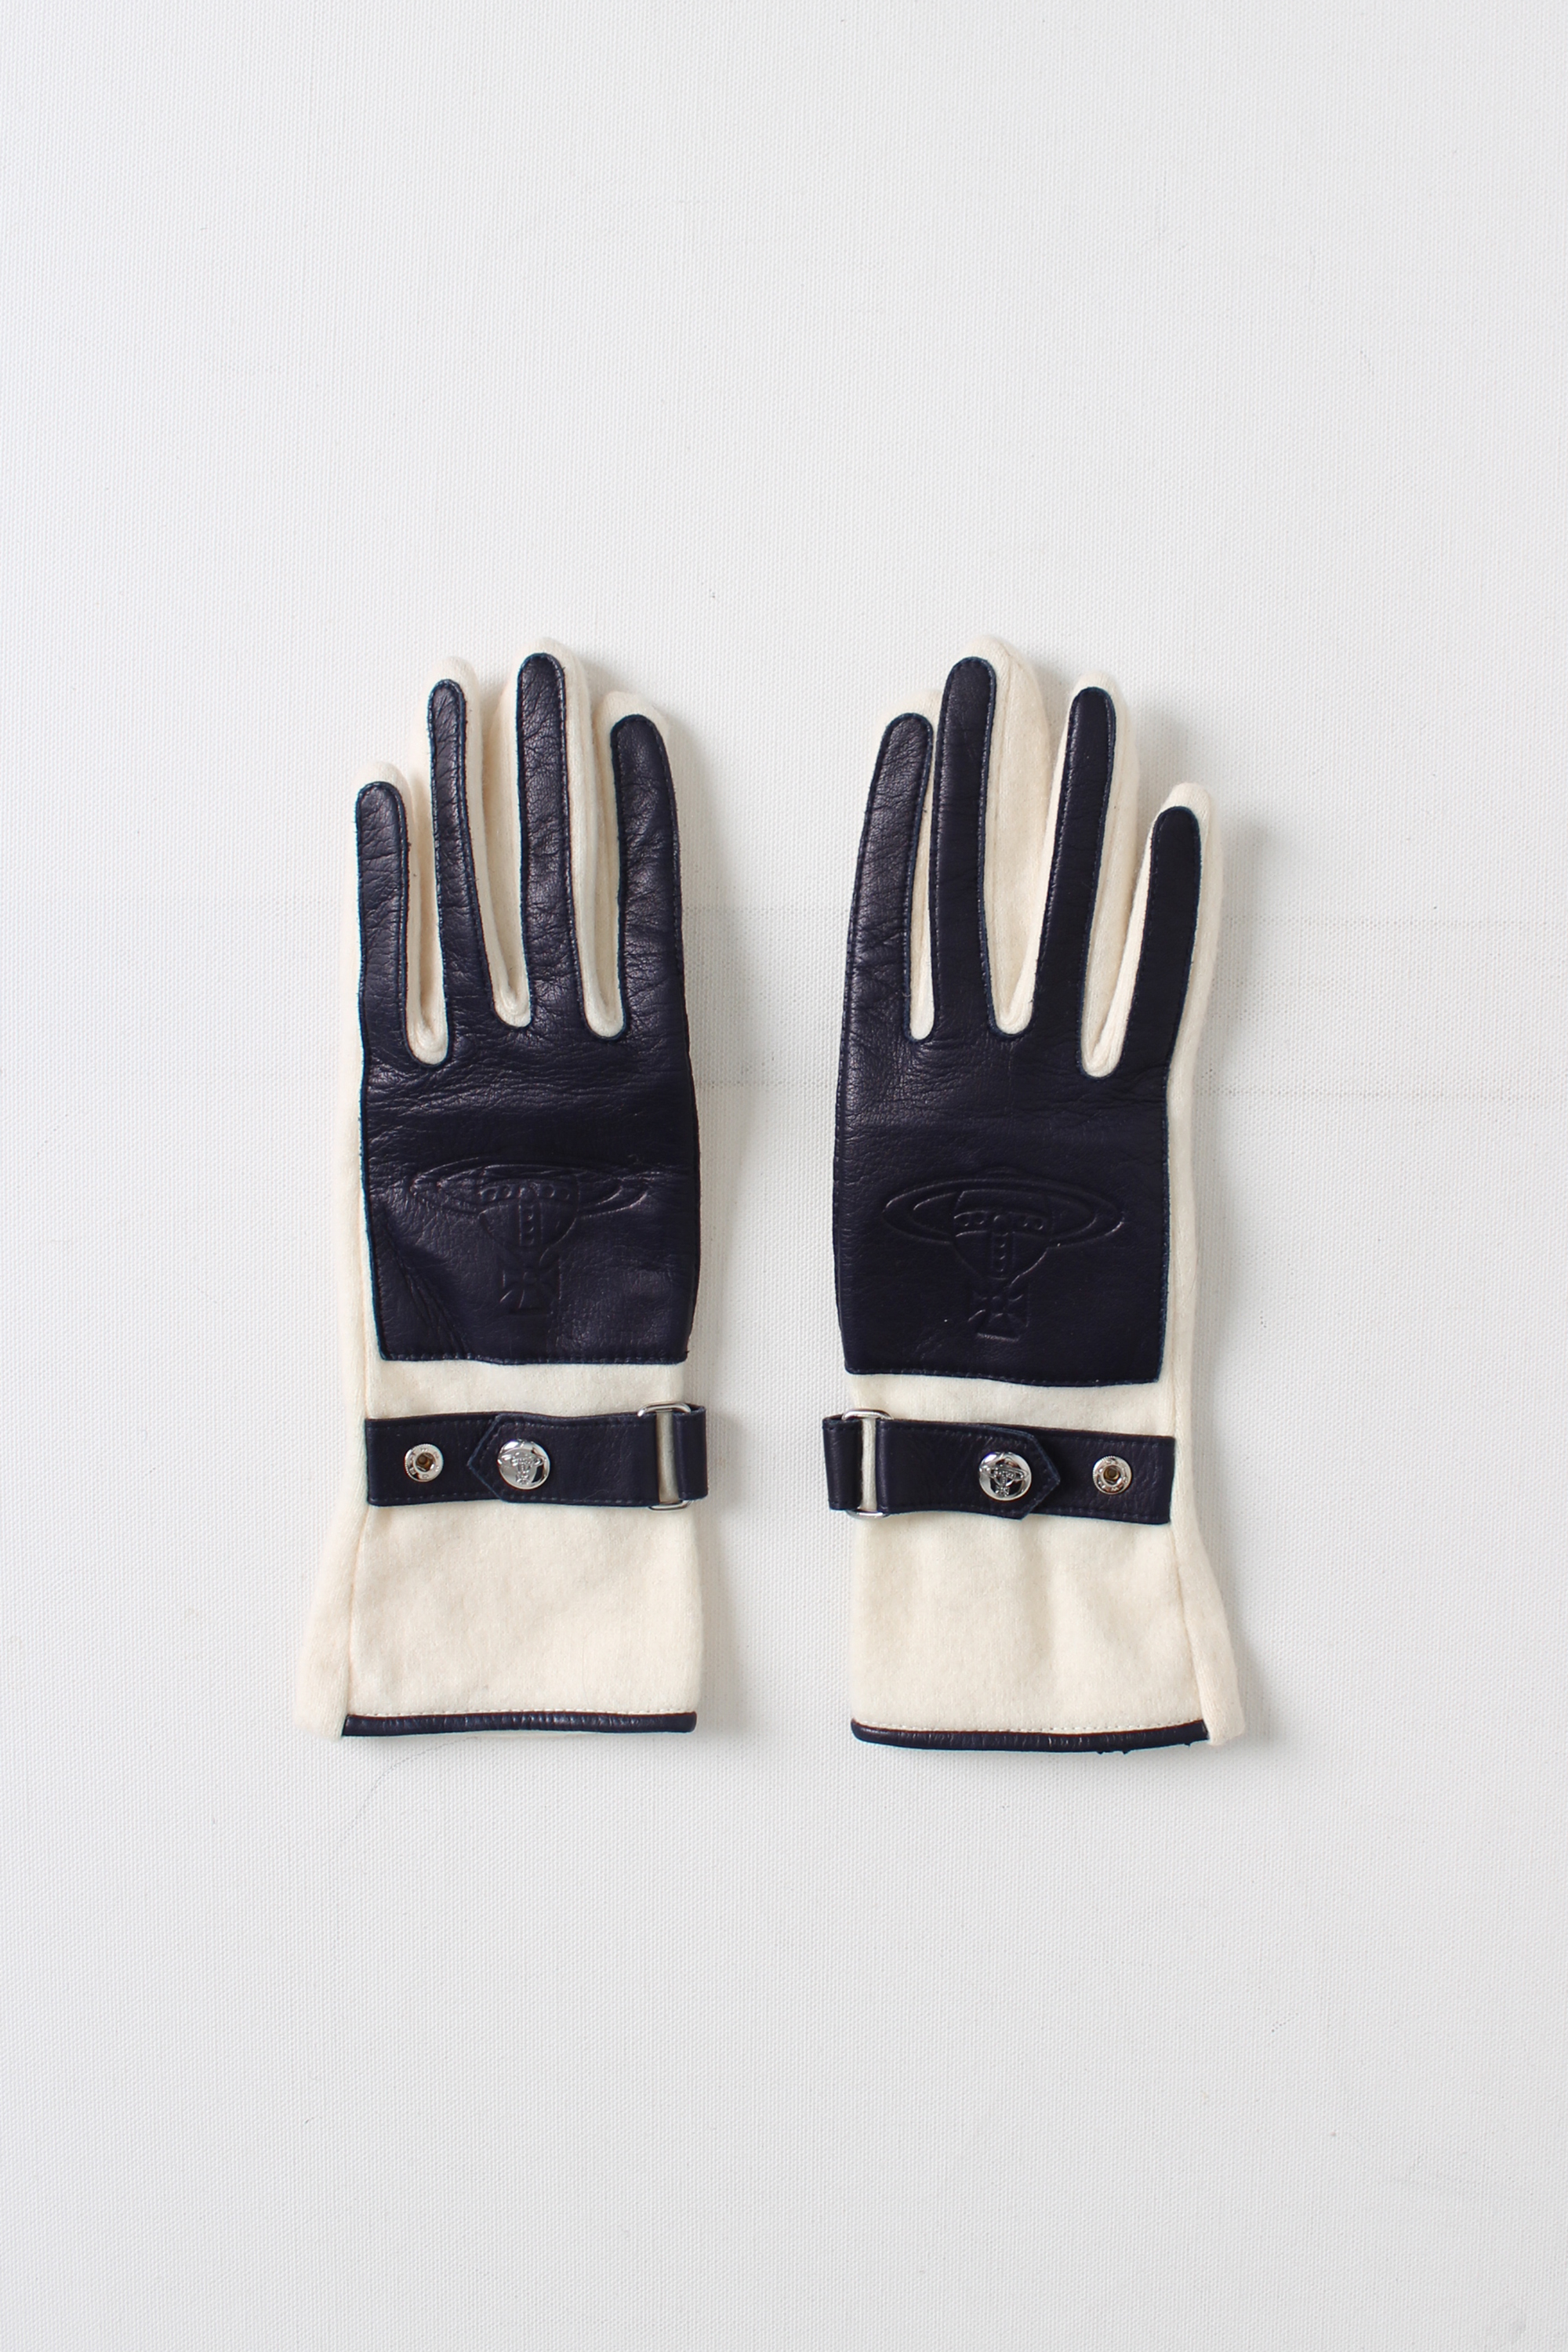 vivienne westwood gloves